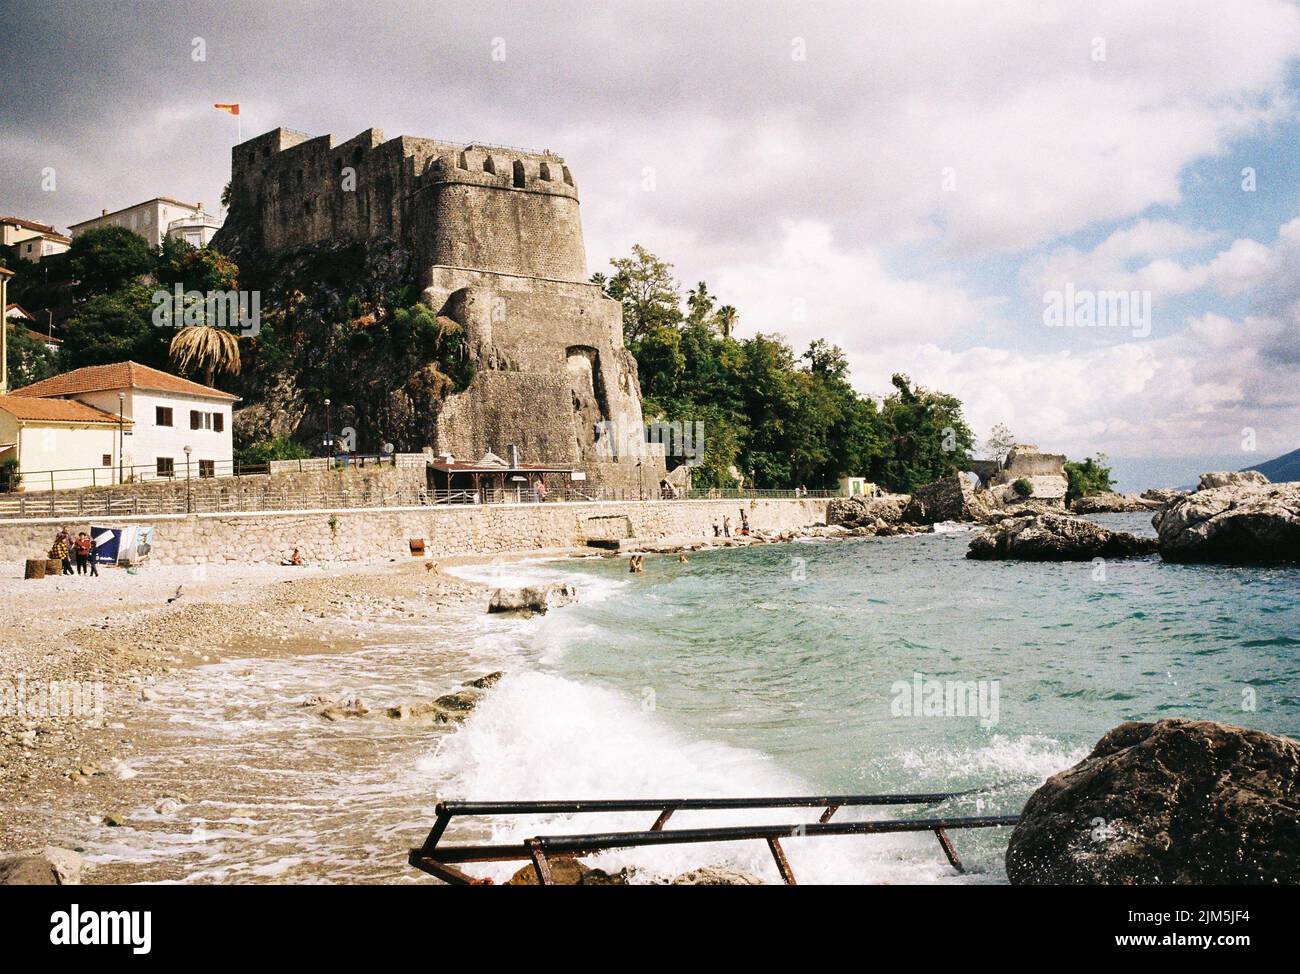 Kotor, Montenegro - 35mm film, photo analogique rétro celluloïd Banque D'Images